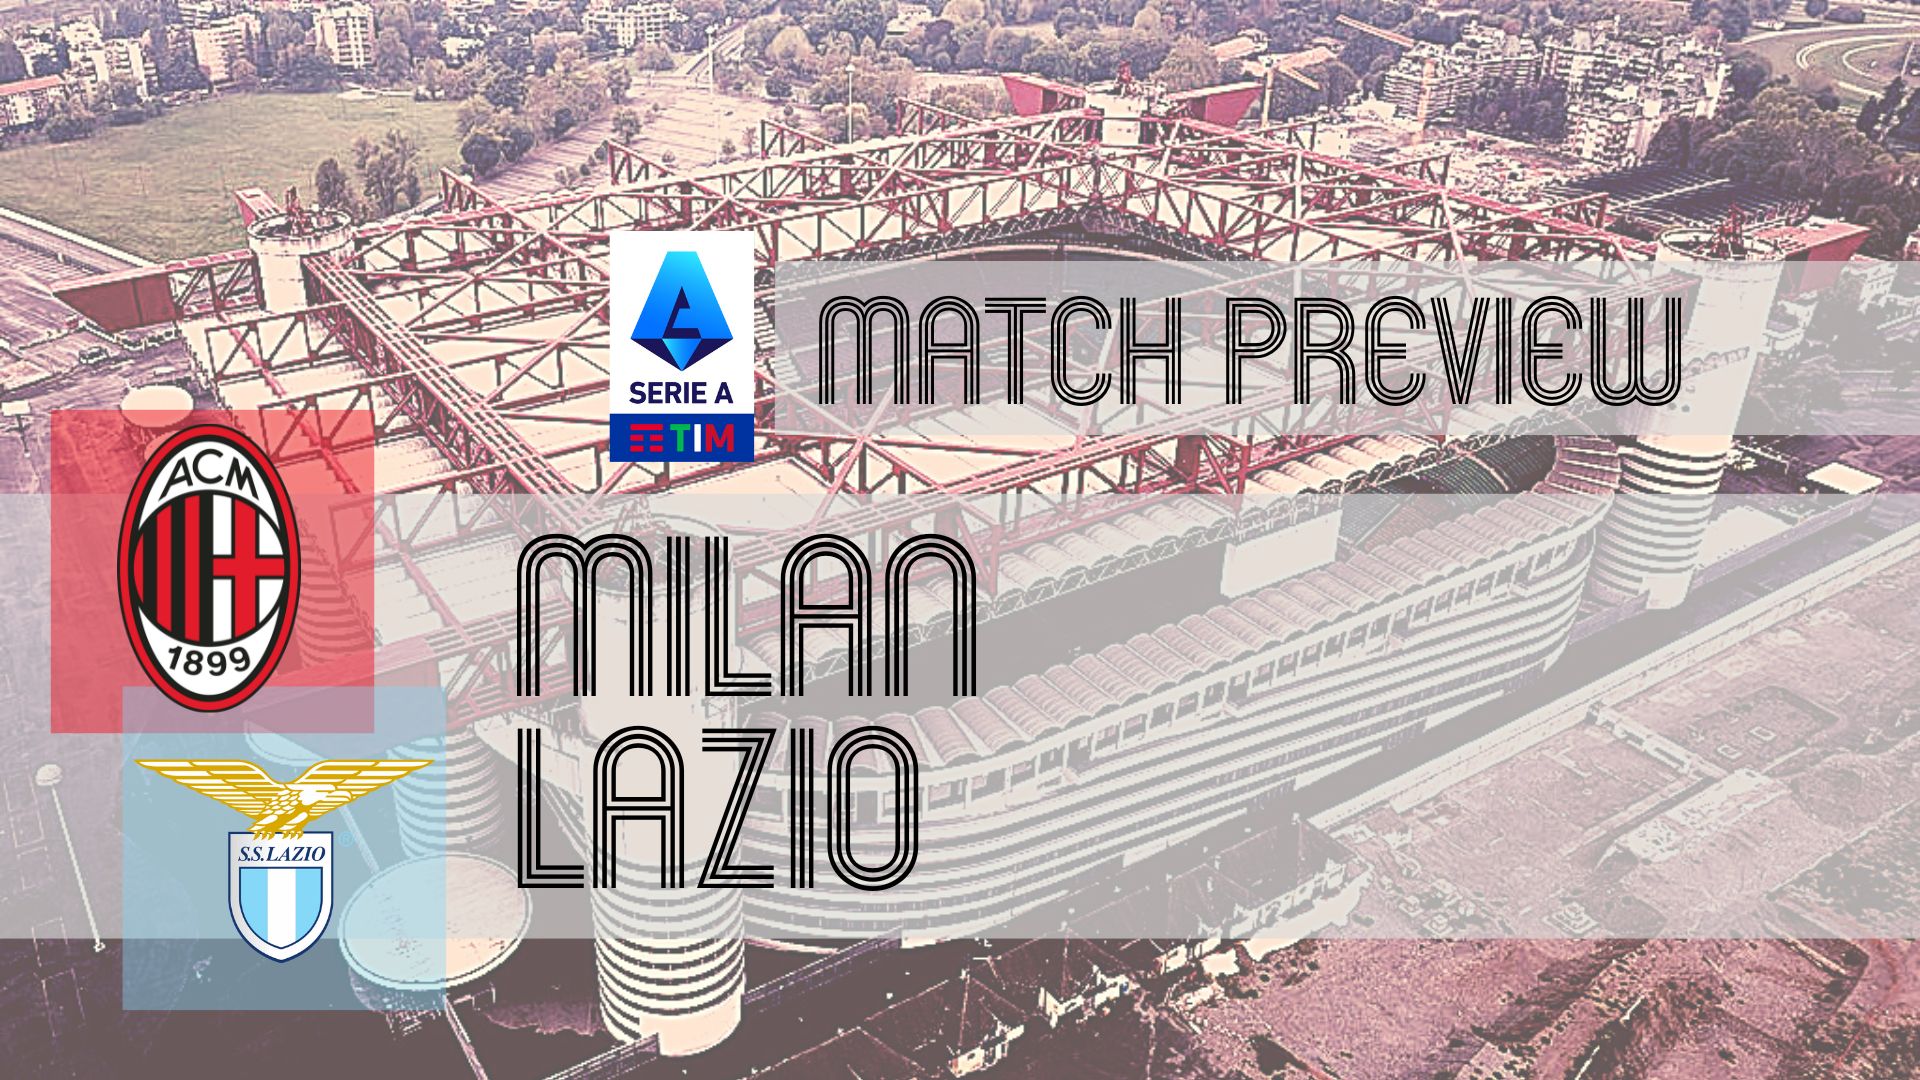 Torino vs Lazio: Match Preview, Lineups, Prediction